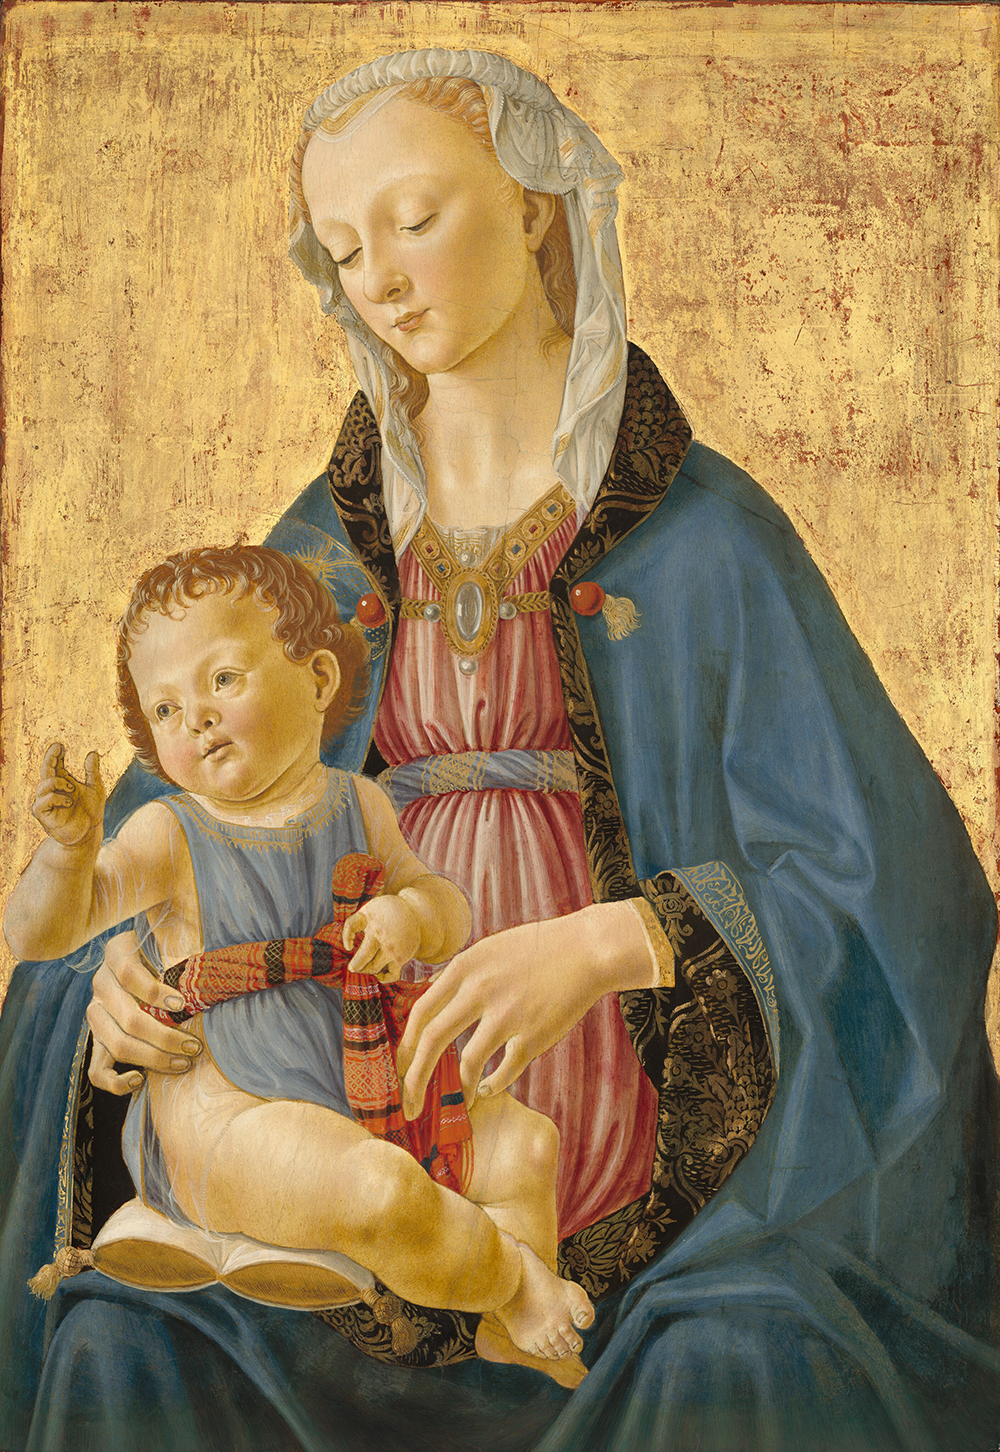 Sur un fond doré, une femme blonde est représentée sur les genoux, face à nous alors qu'elle tient et regarde vers le bas un bébé dodu assis sur un oreiller or et blanc sur sa cuisse droite, à notre gauche, dans cette peinture verticale.